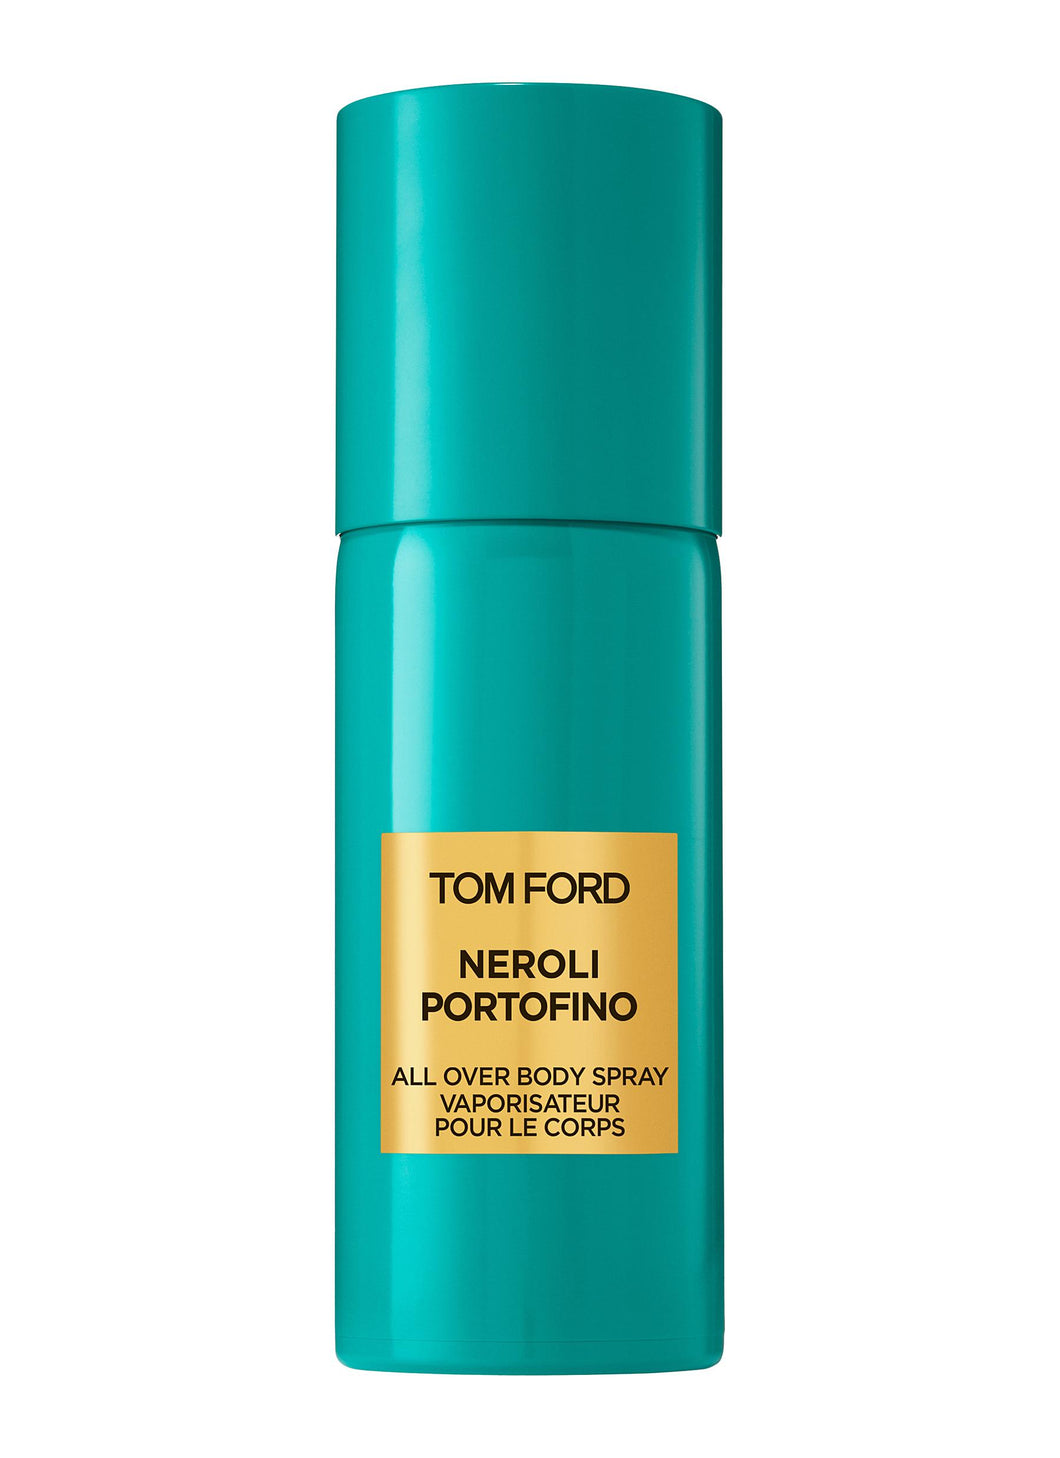 TOM FORD NEROLI PORTOFINO Body Spray - 150ml